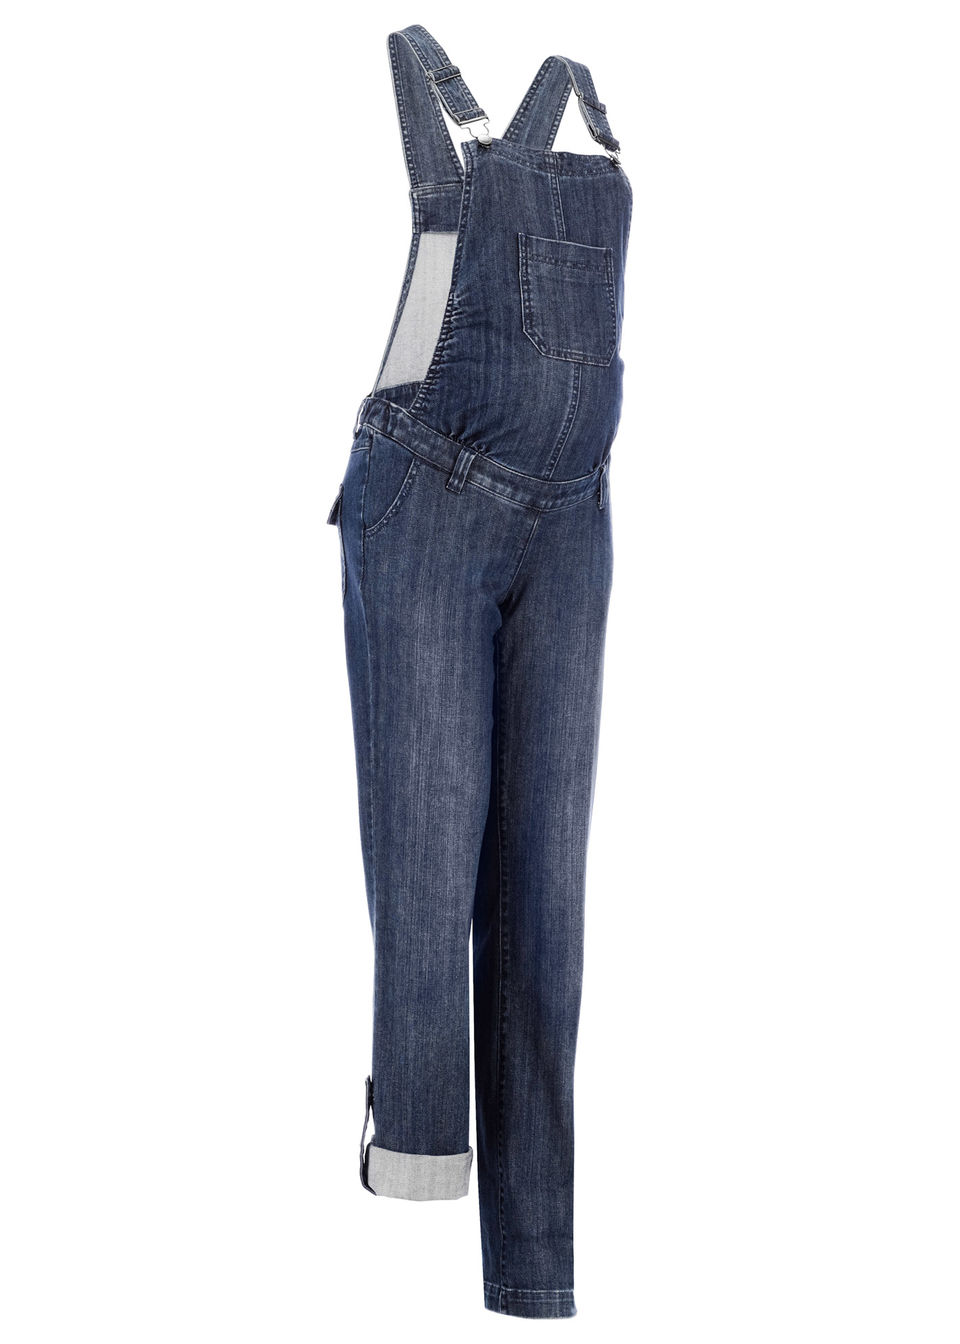 Для будущих мам: джинсовый полукомбинезон с прямыми брючинами от bonprix